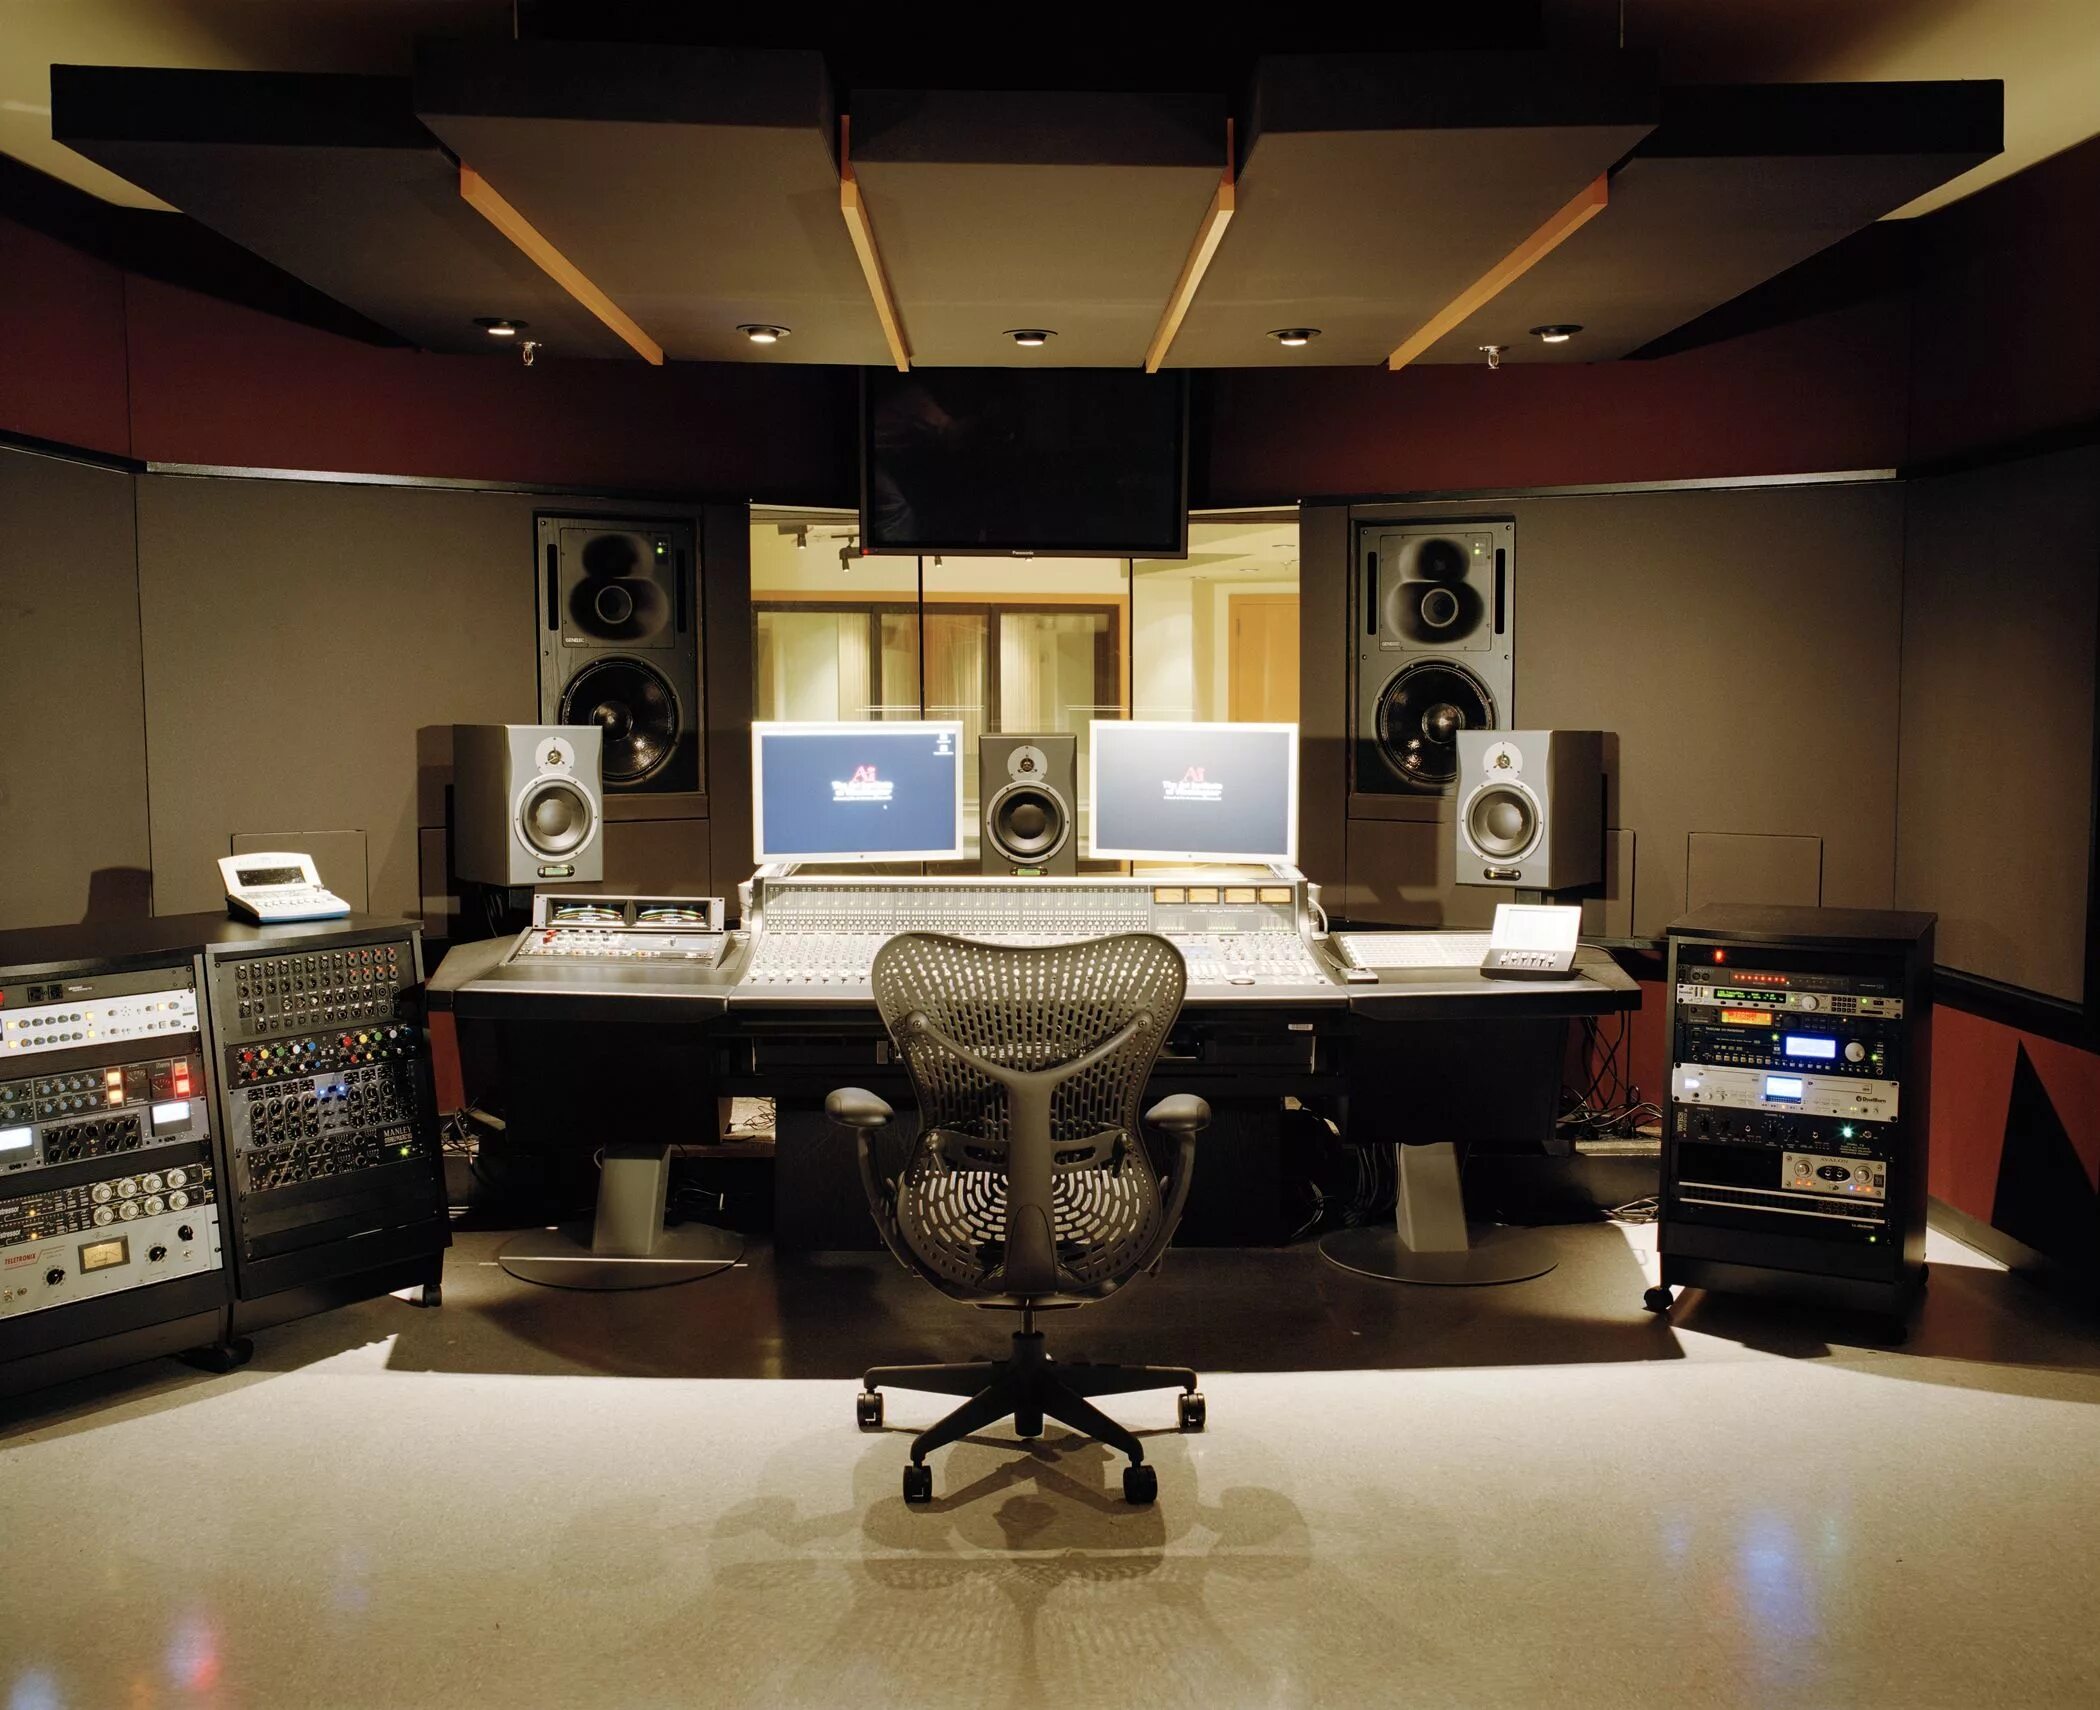 Sounds rooms. Музыкальная студия. Студия звукозаписи. Профессиональная студия звукозаписи. Комната студия звукозаписи.